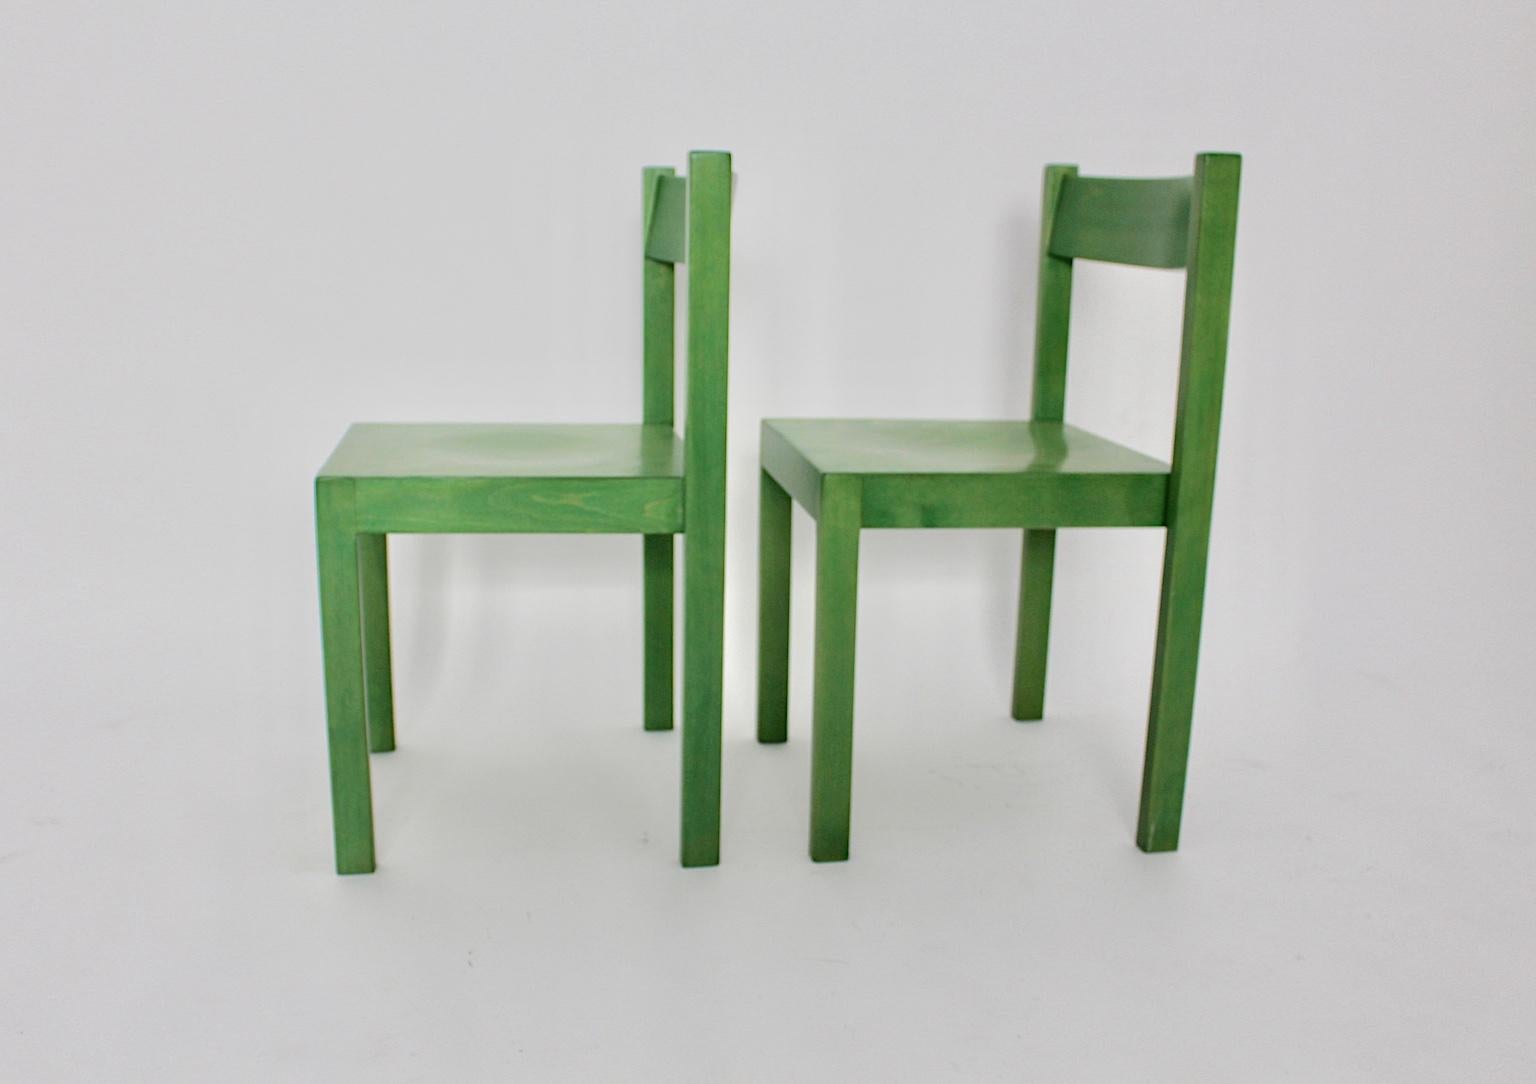 Mid Century Modern Satz von 2 grünen Vintage Esszimmerstühlen wurde von Carl Auböck 1956 Wien entworfen und von E & A Pollak Wien ausgeführt.
Die Esszimmerstühle wurden aus massivem Buchenholz und Sperrholz gefertigt und grün gebeizt und lackiert.